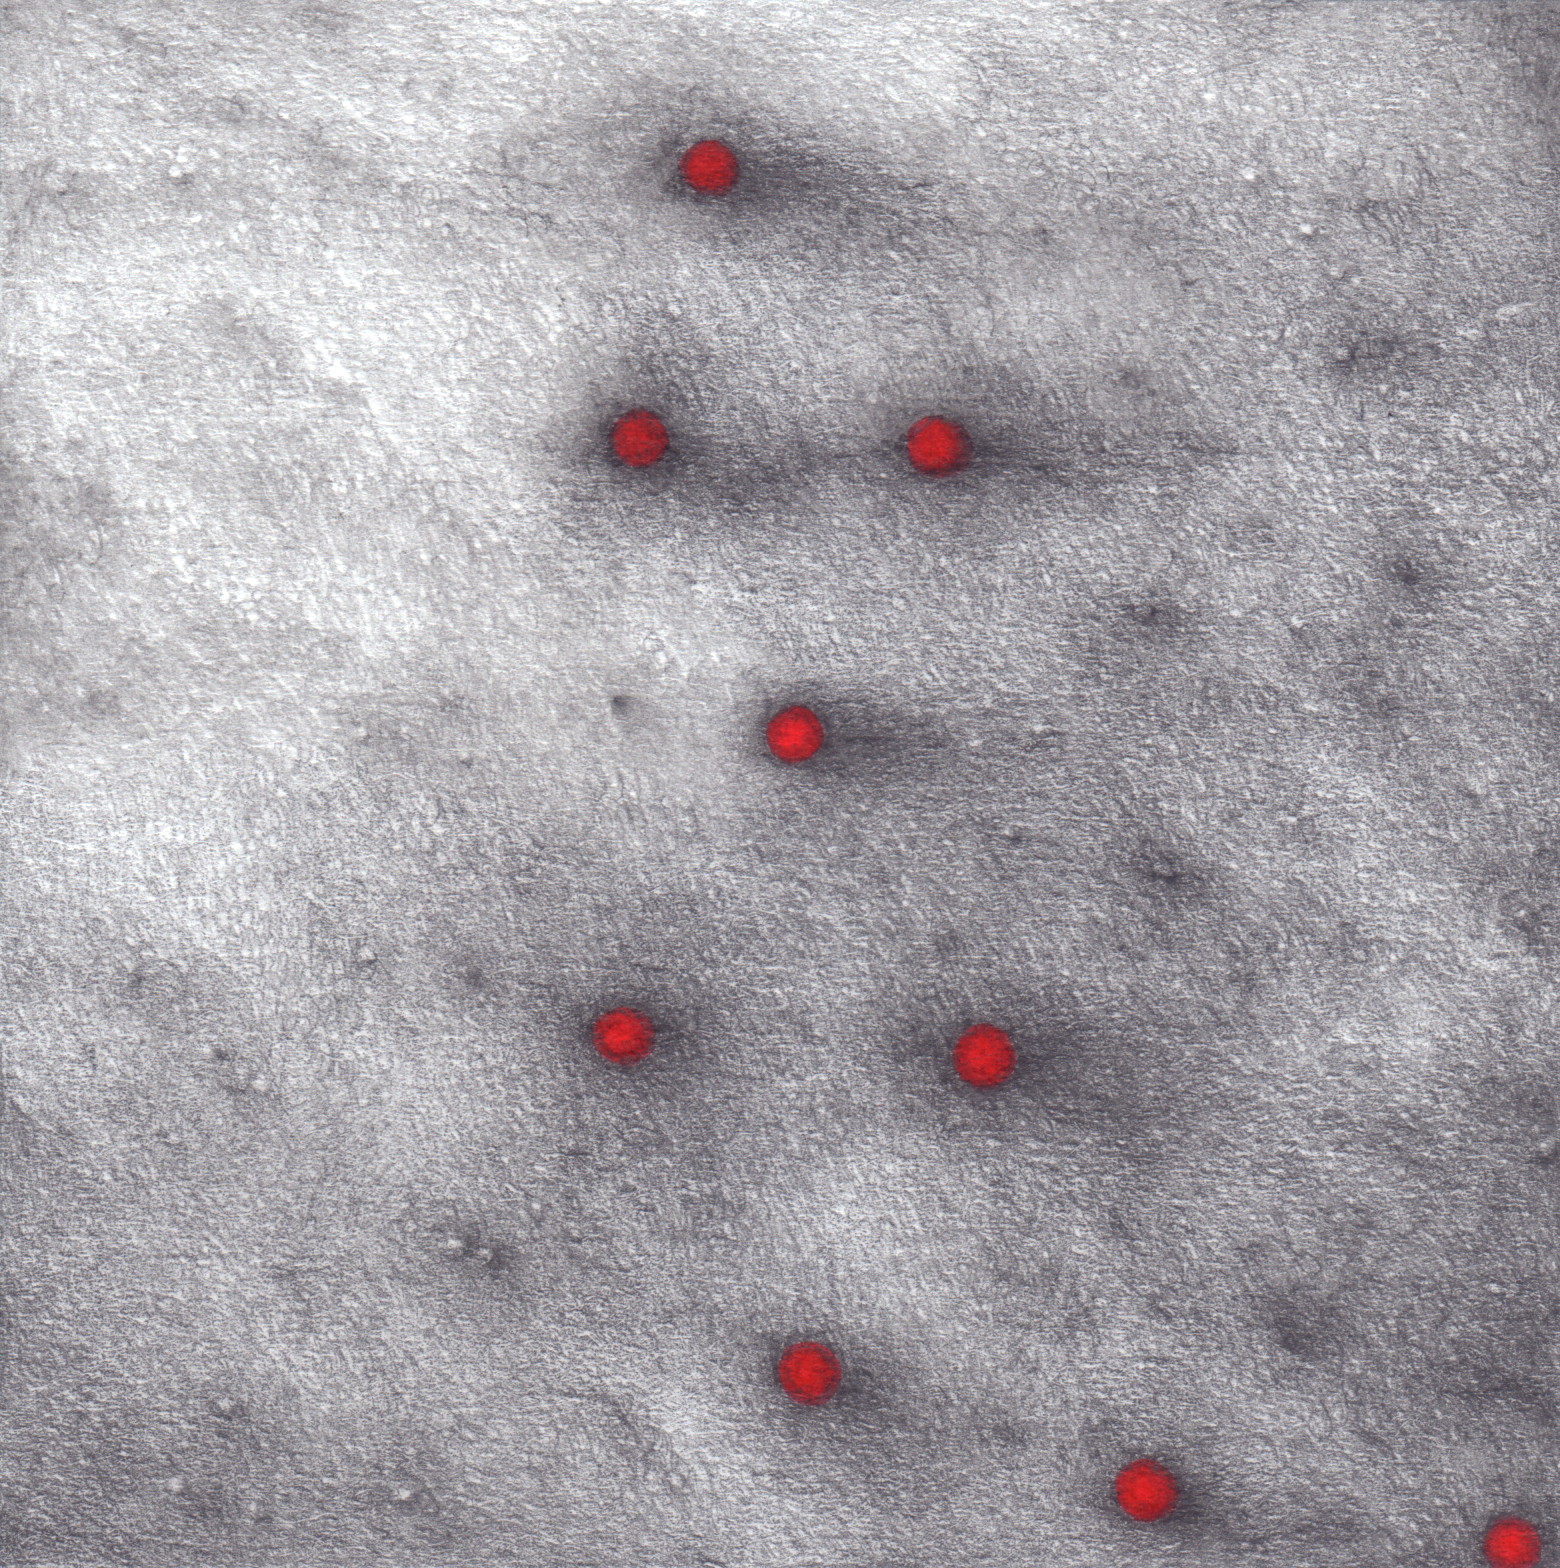 Na szarym tle widać dziewięć kropek. Kropki są czerwone i otoczone ciemnym obramowaniem. Tlo jest ziarniste i ma różne odcienie szarości.